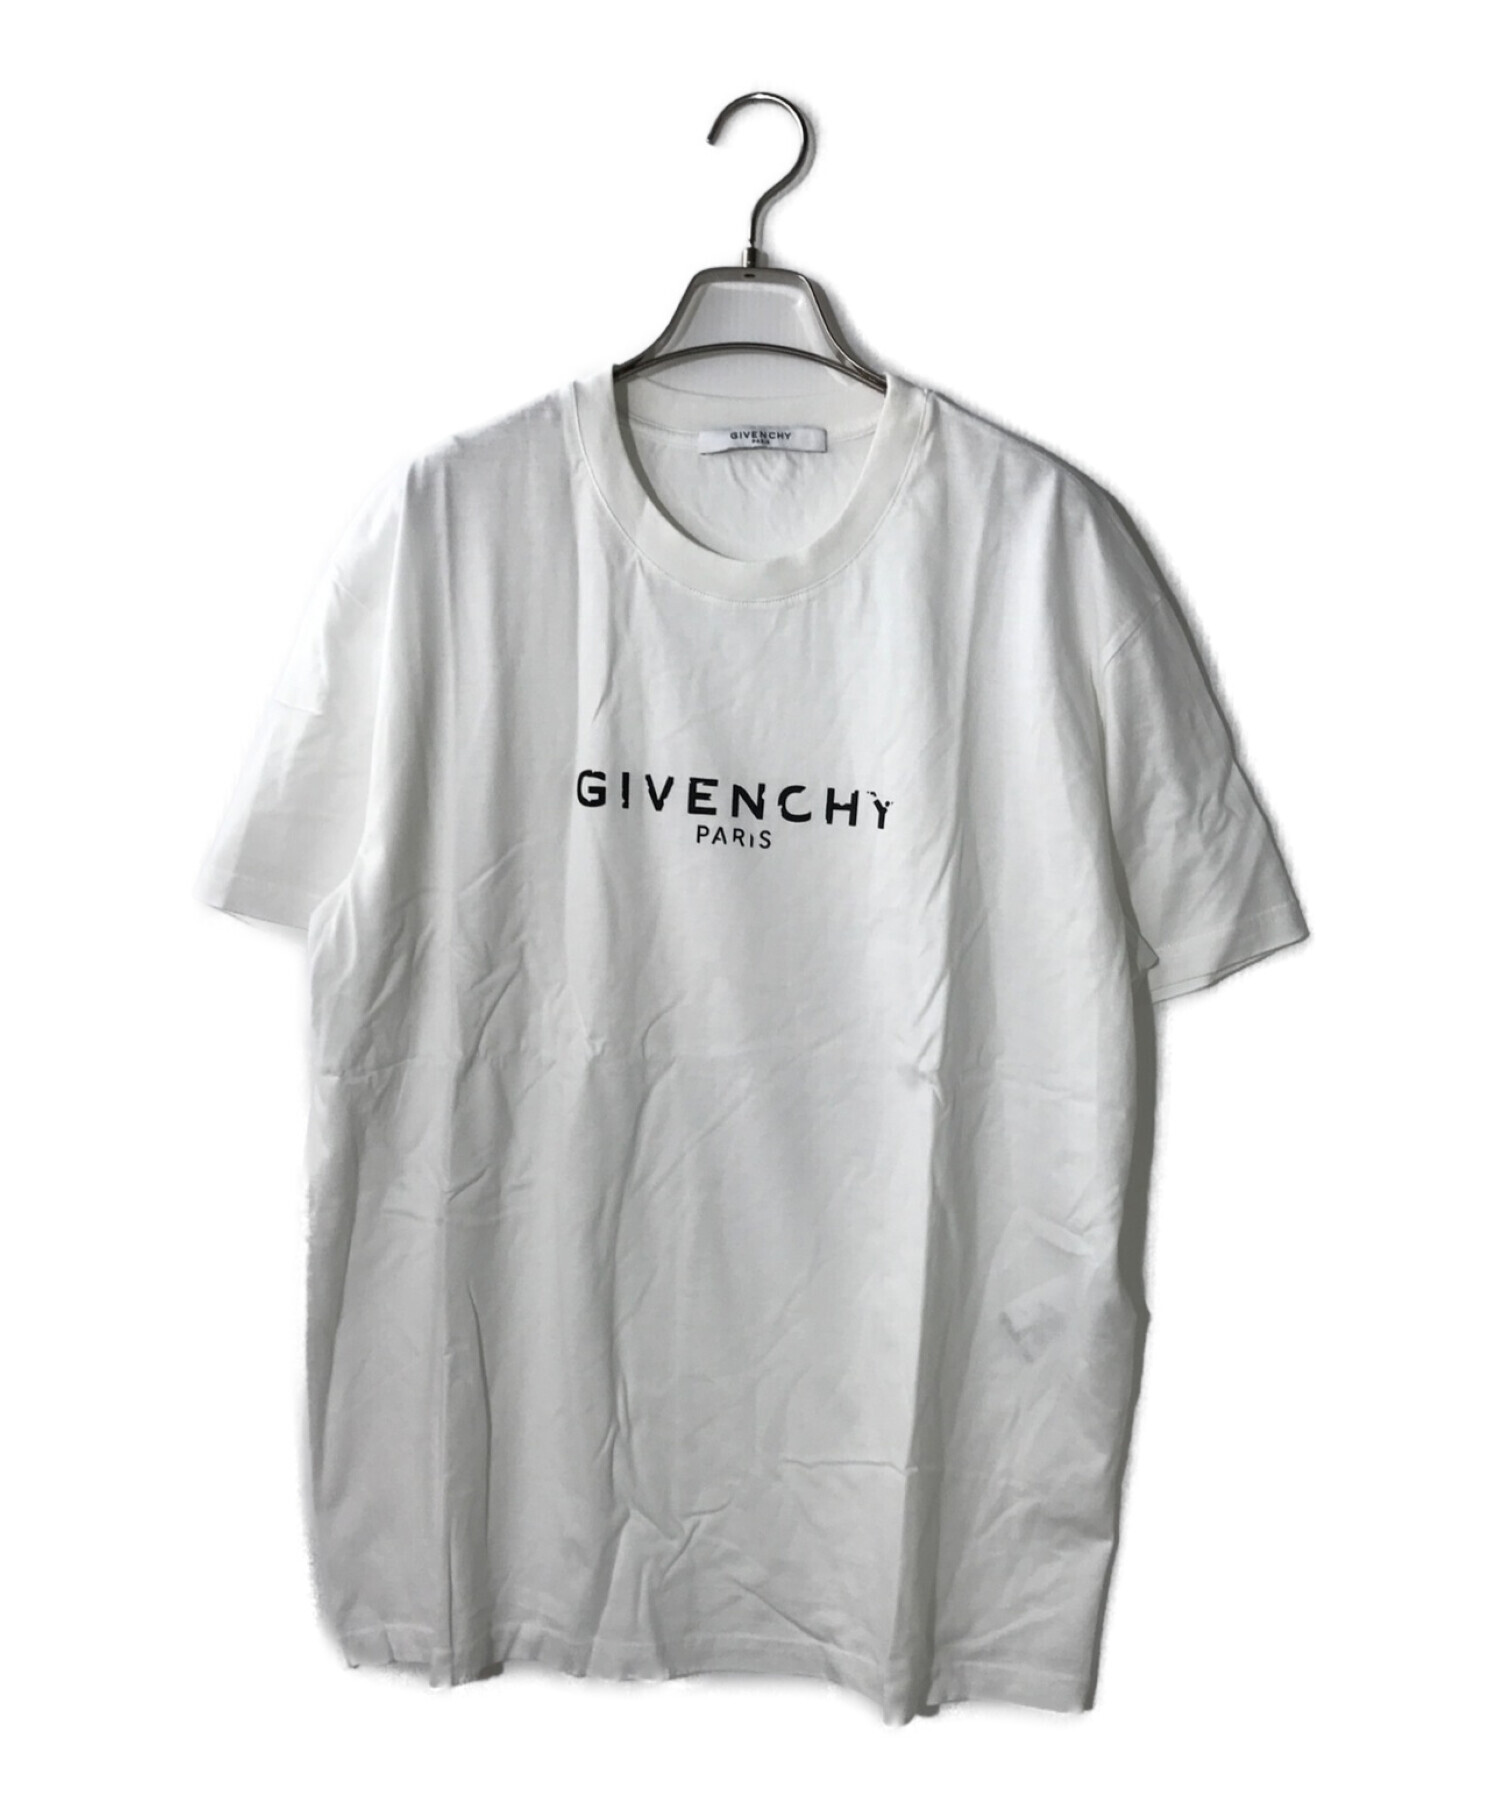 GIVENCHY (ジバンシィ) プリントTシャツ ホワイト サイズ:M